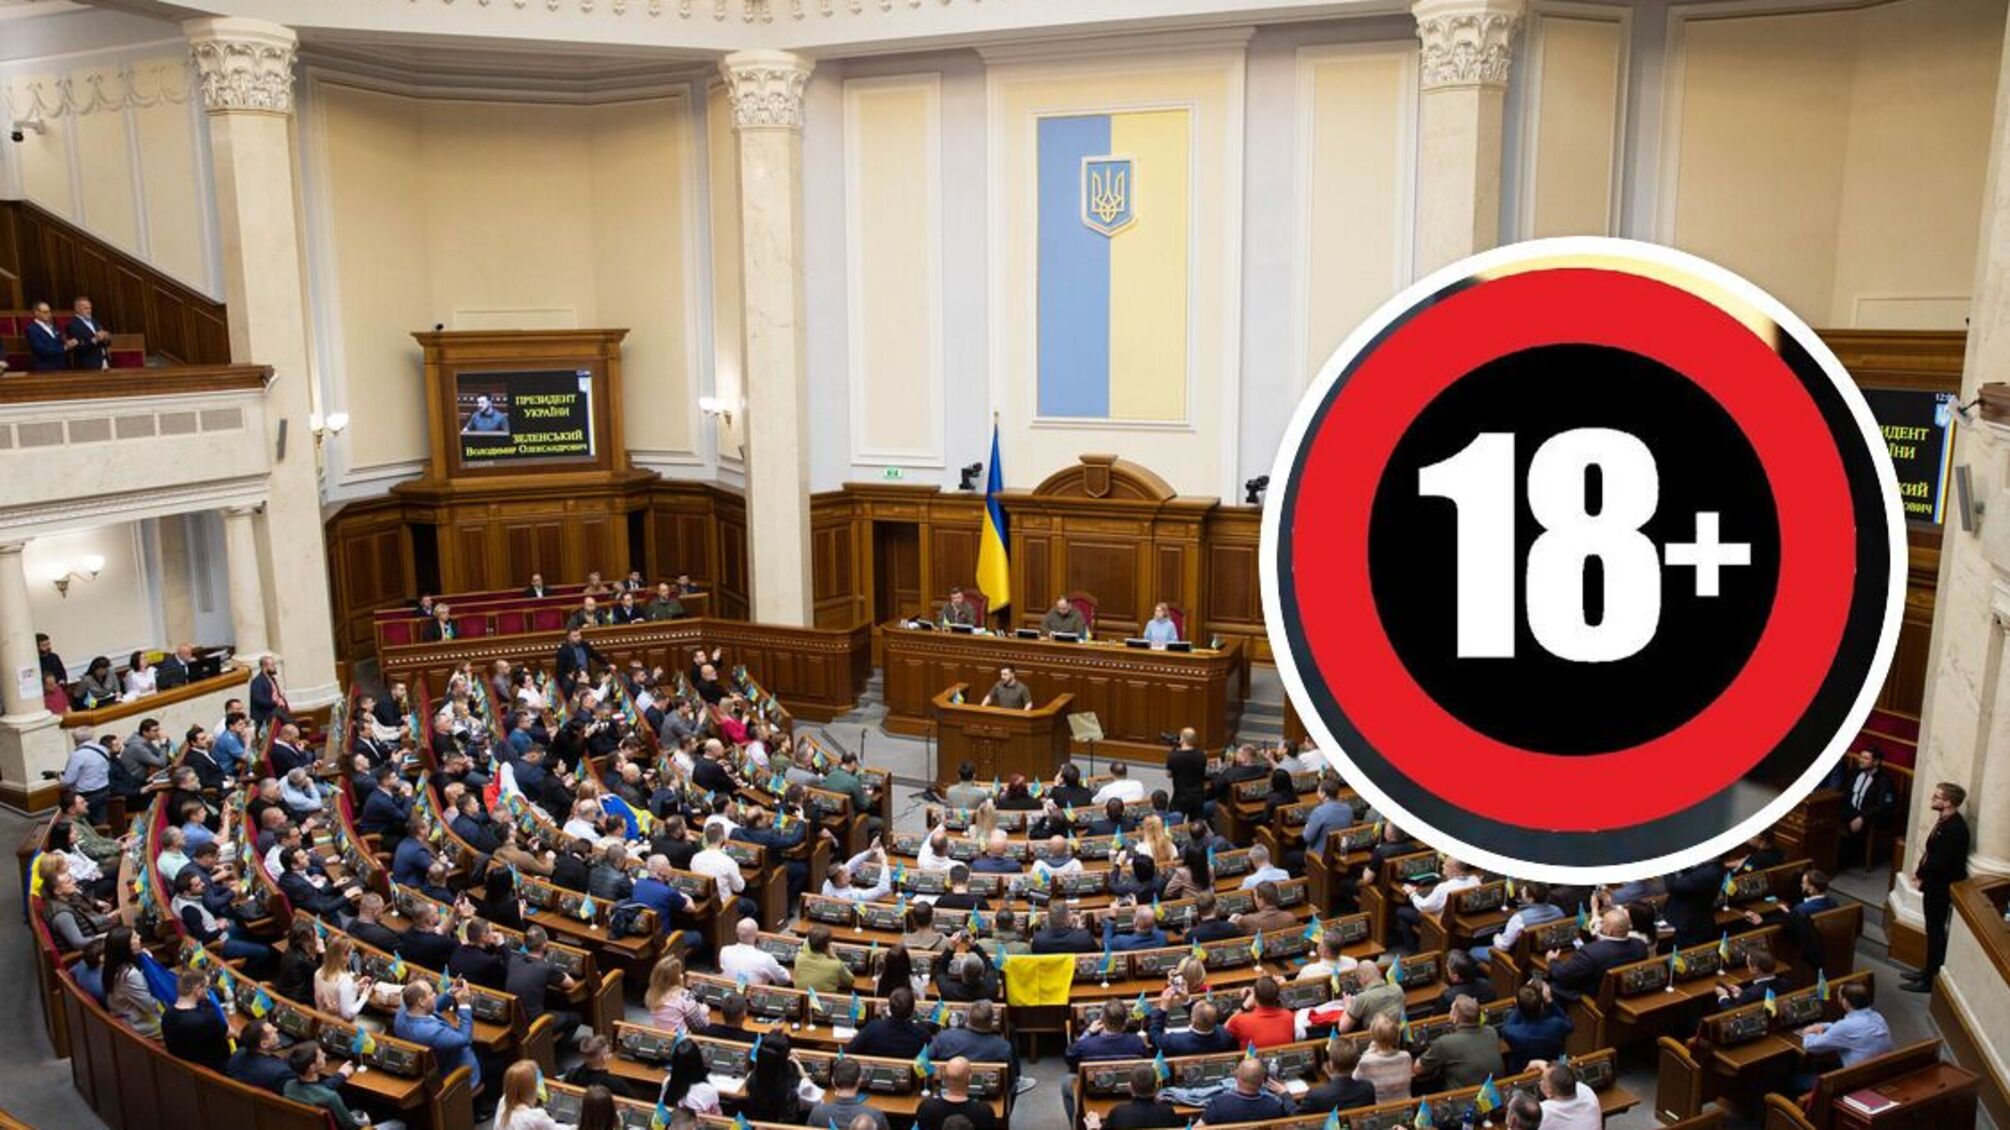 Контент для взрослых узаконят: в Украине предлагают декриминализировать видео 18+